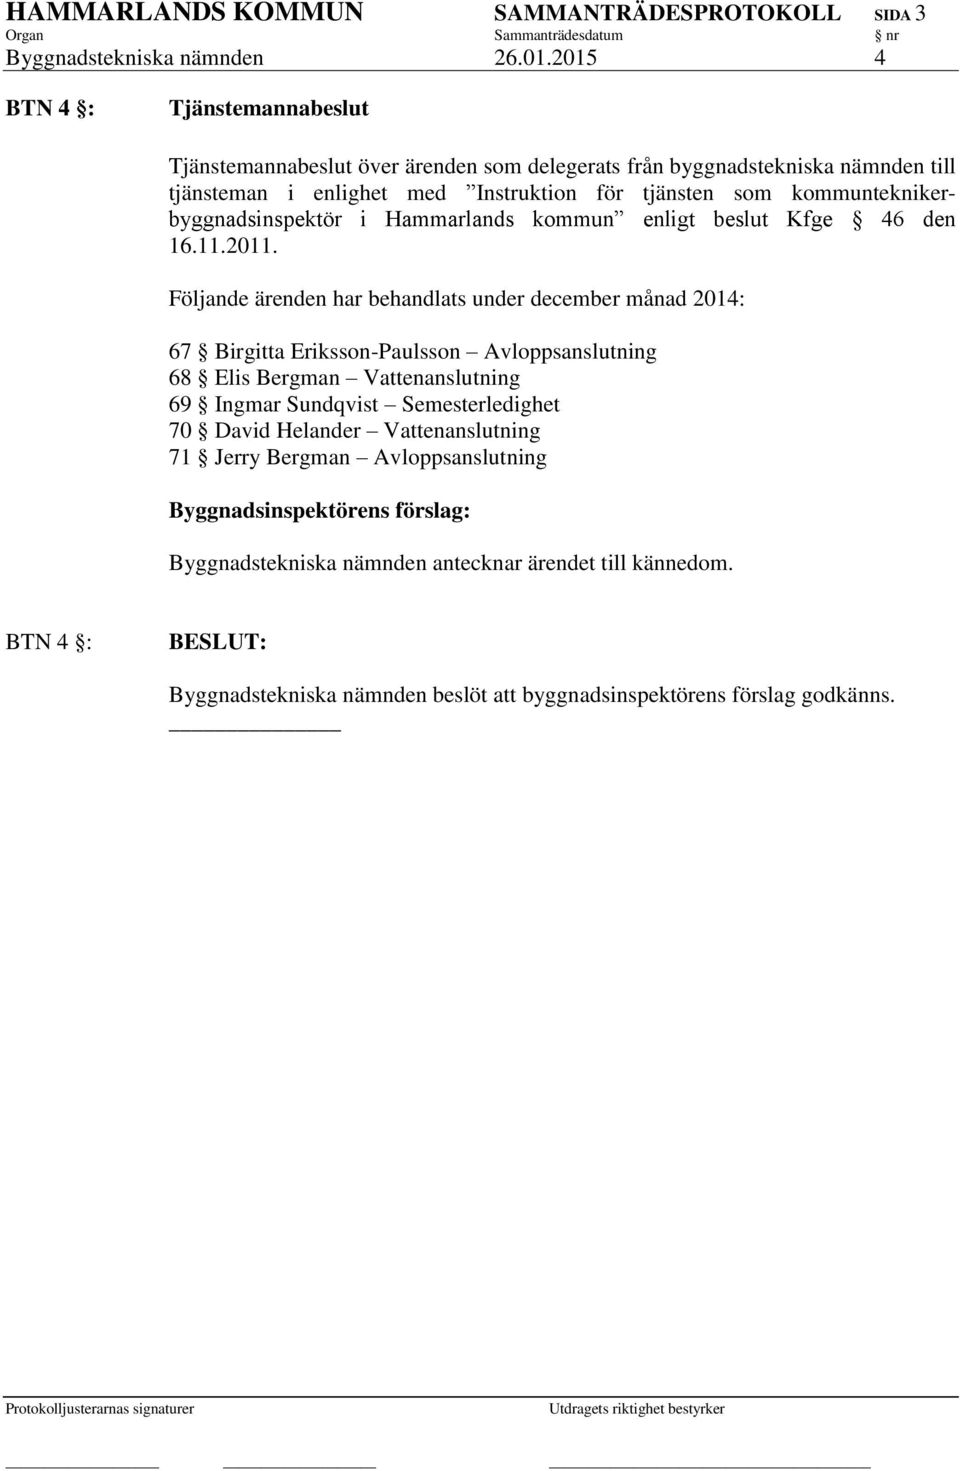 kommunteknikerbyggnadsinspektör i Hammarlands kommun enligt beslut Kfge 46 den 16.11.2011.